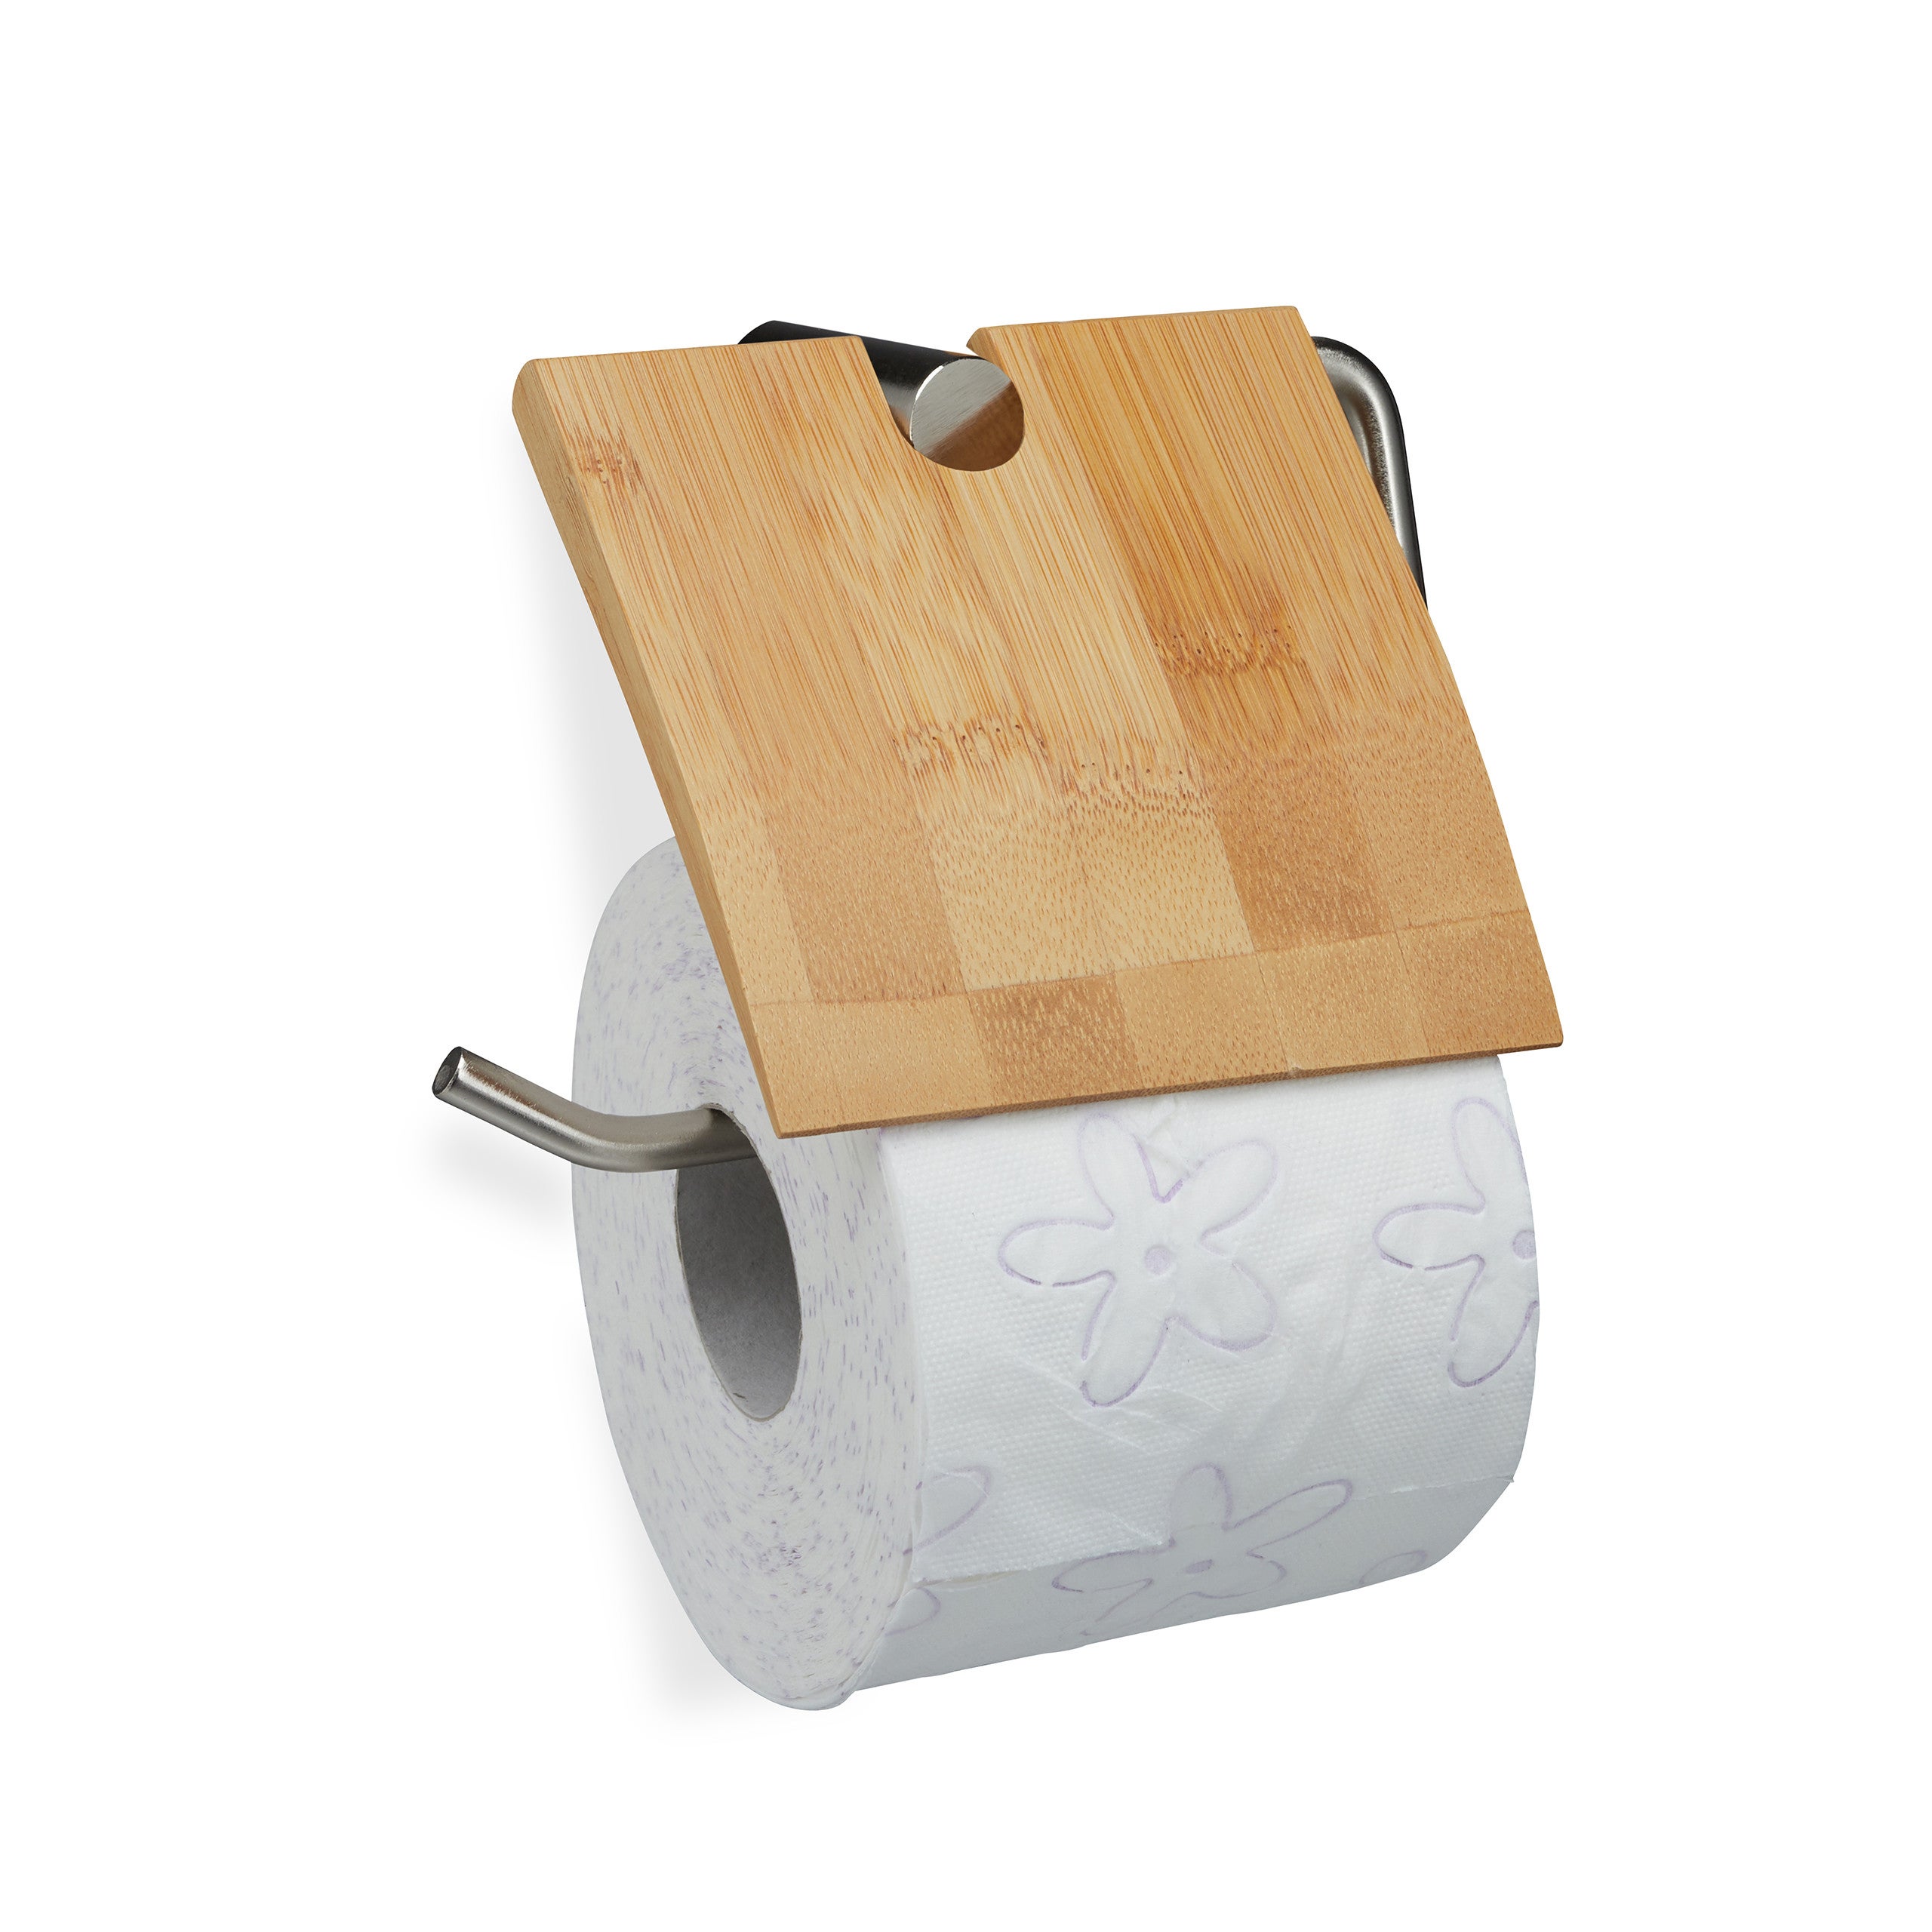 Relaxdays Support papier toilette en bambou, pour salle de bains & WC, mural,  autocollant, HxLxP: 3x16x9 cm, nature